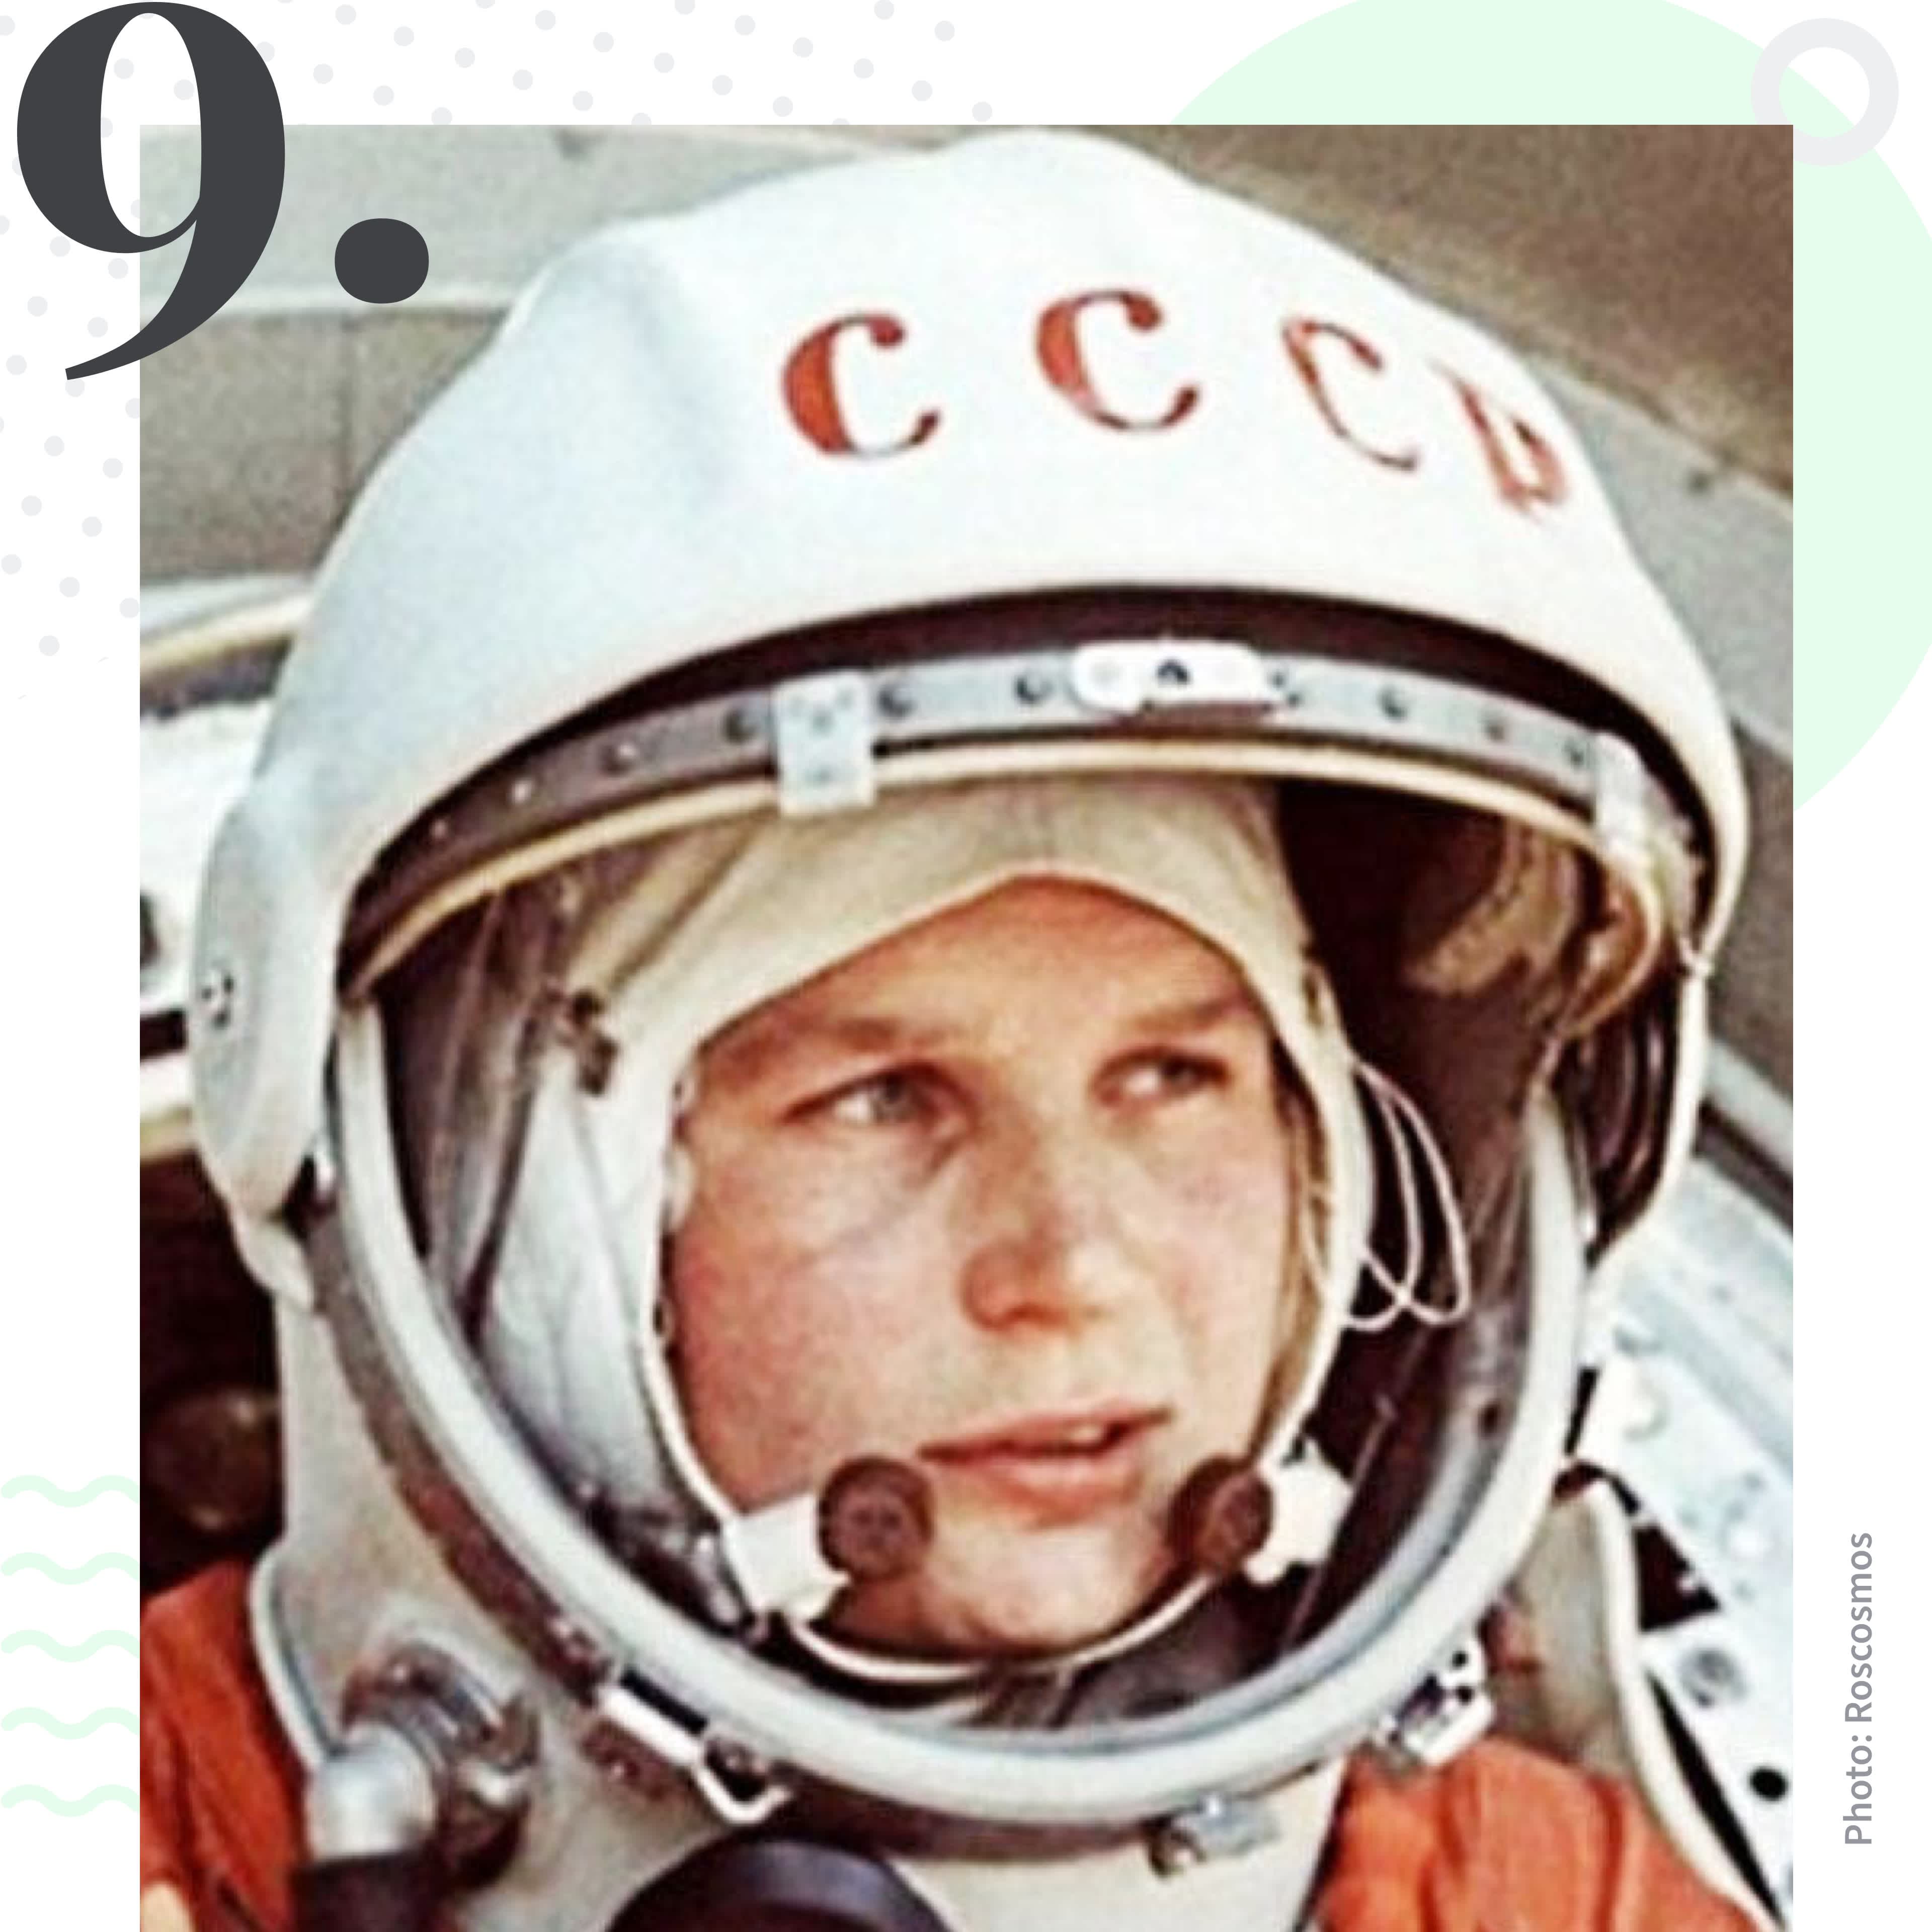 Valentina Tereshkova a été la première femme dans l'espace. Classée 9ème dans la liste des femmes voyageuses les plus inspirantes selon le classement Tourlane. 